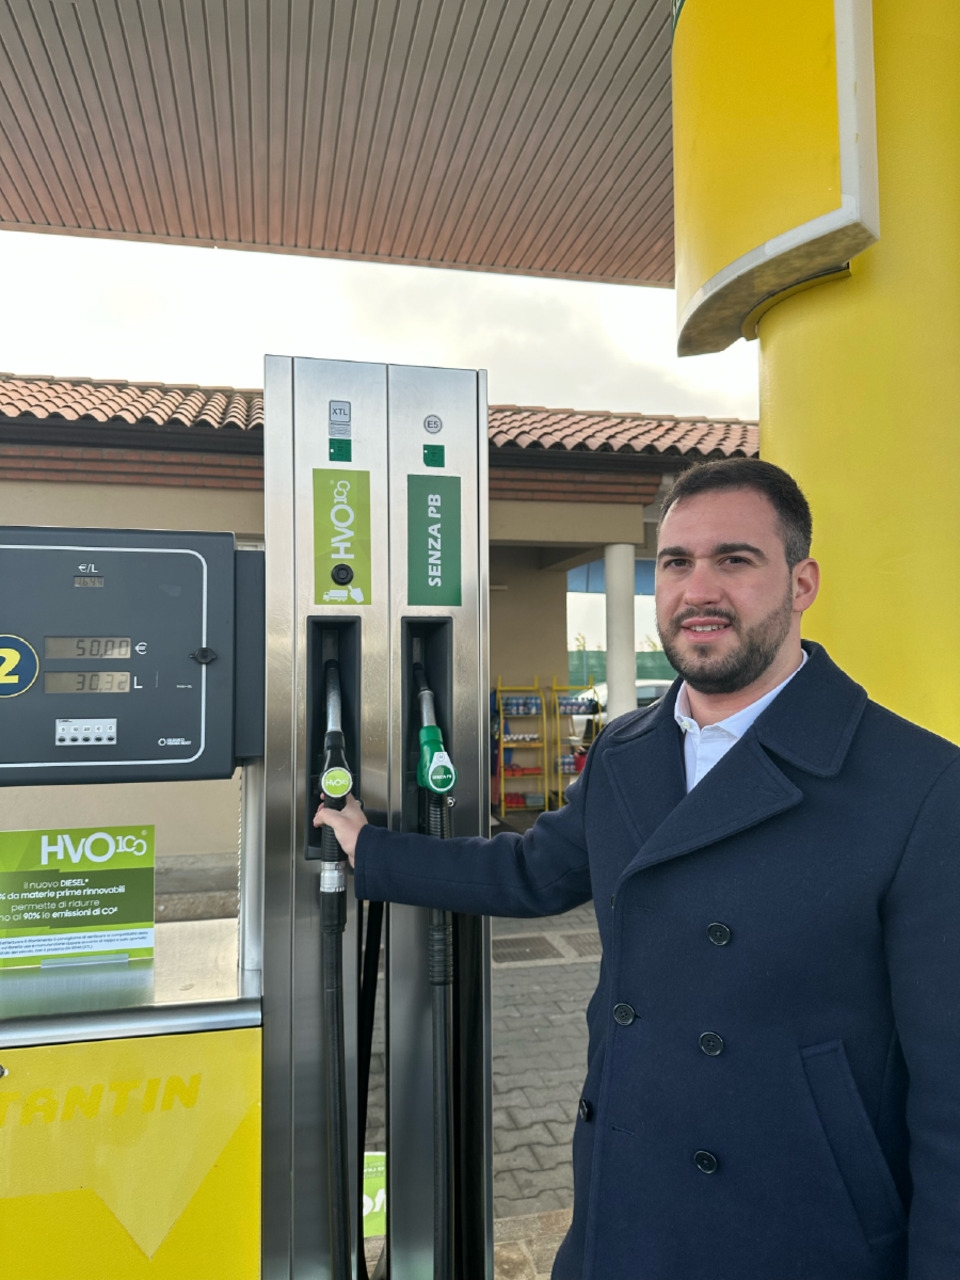 Biodiesel: Luca Cavatton è Responsabile HVO100 di Costantin Spa